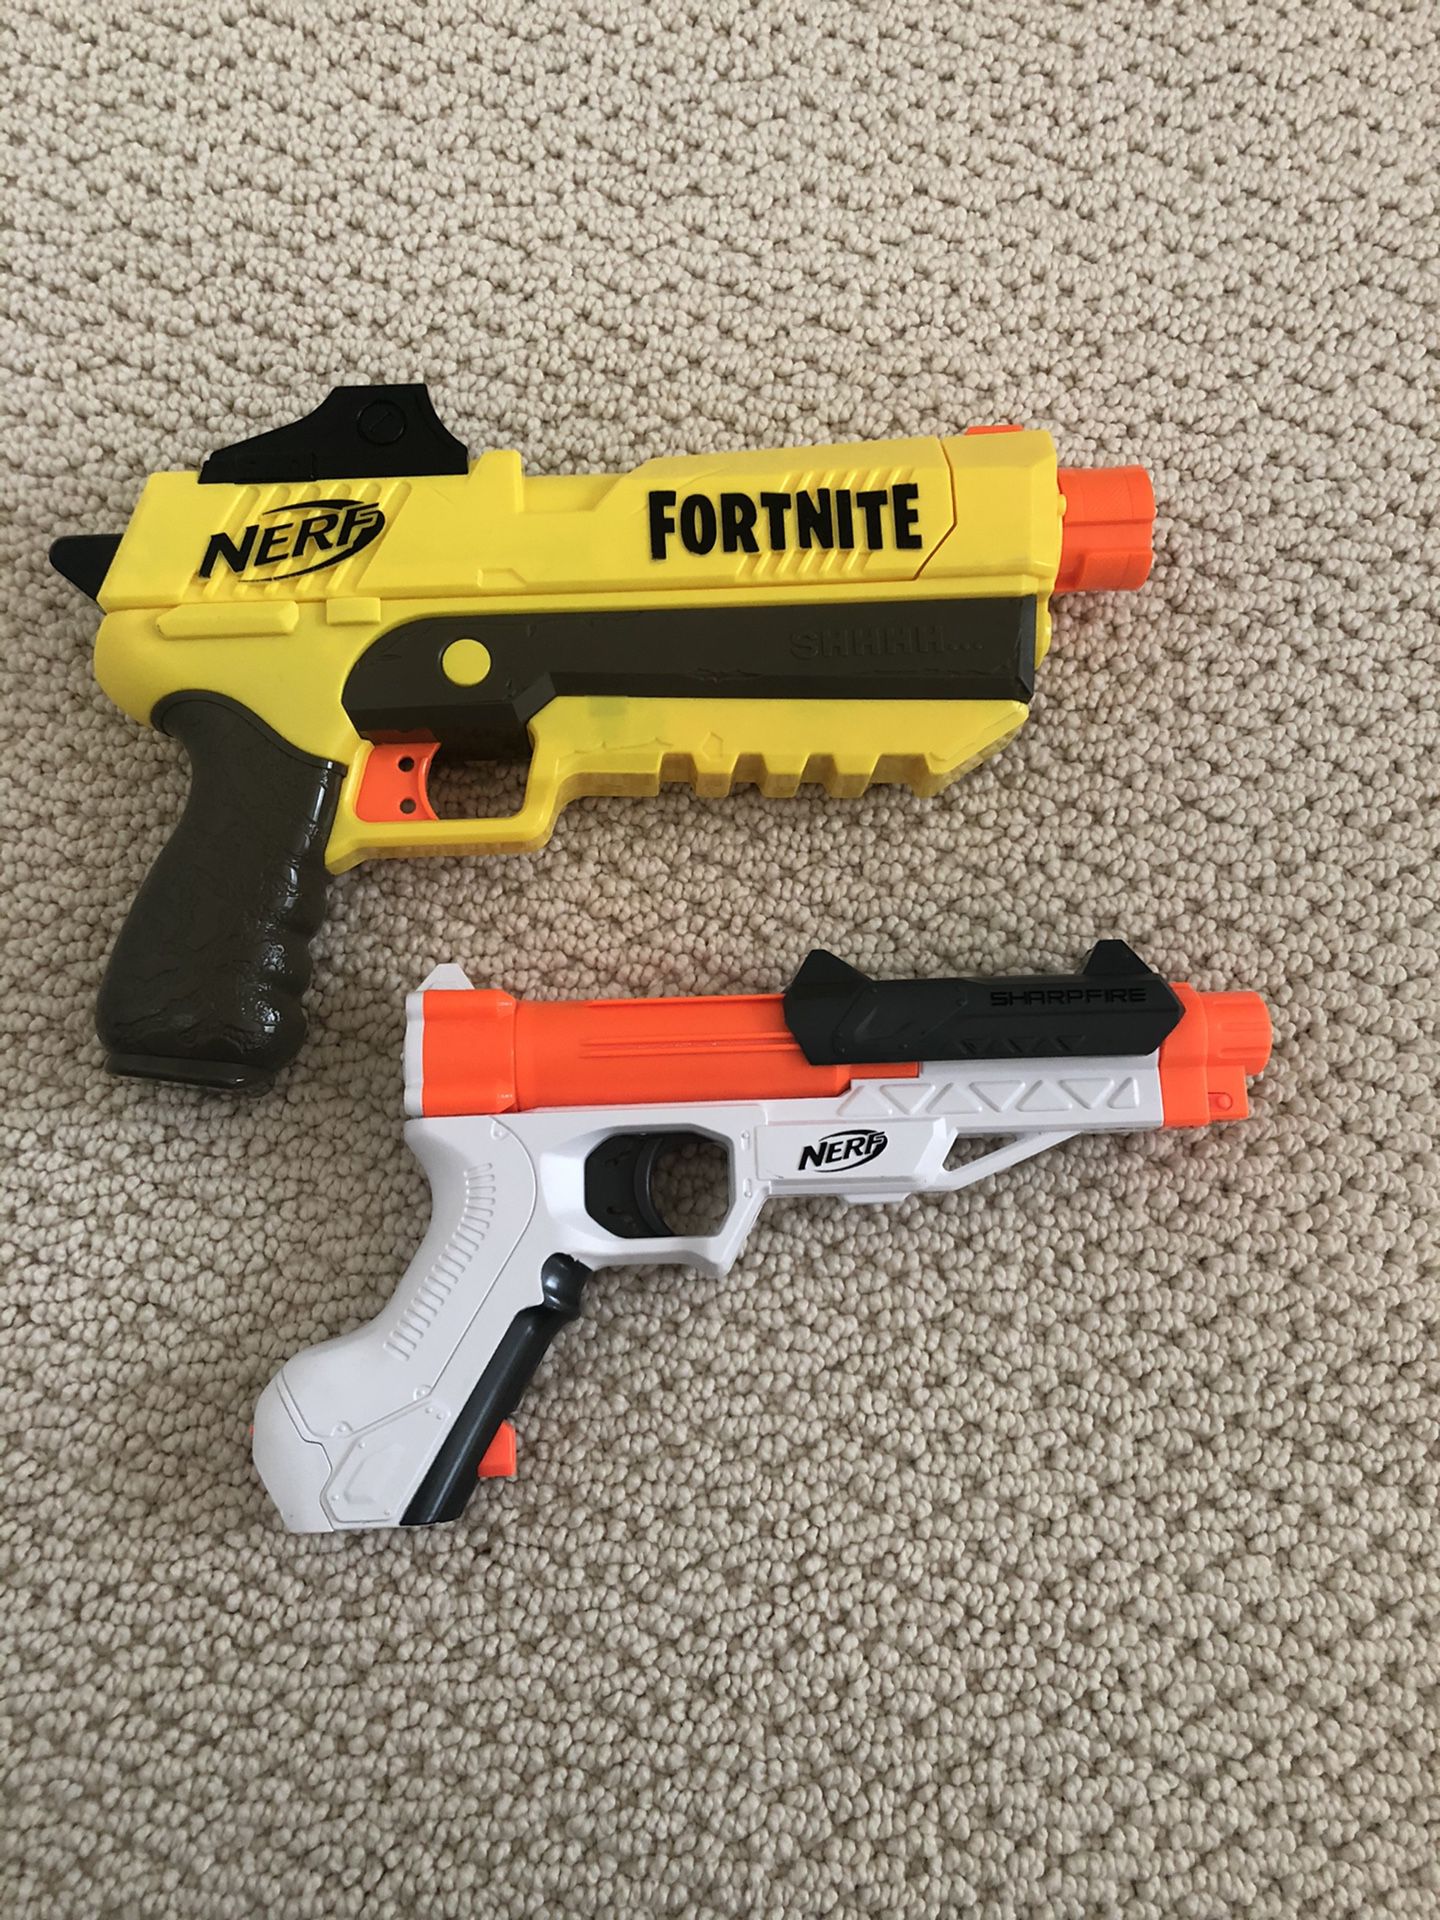 NERF Fortnite pistol and Sharpfire Pistol